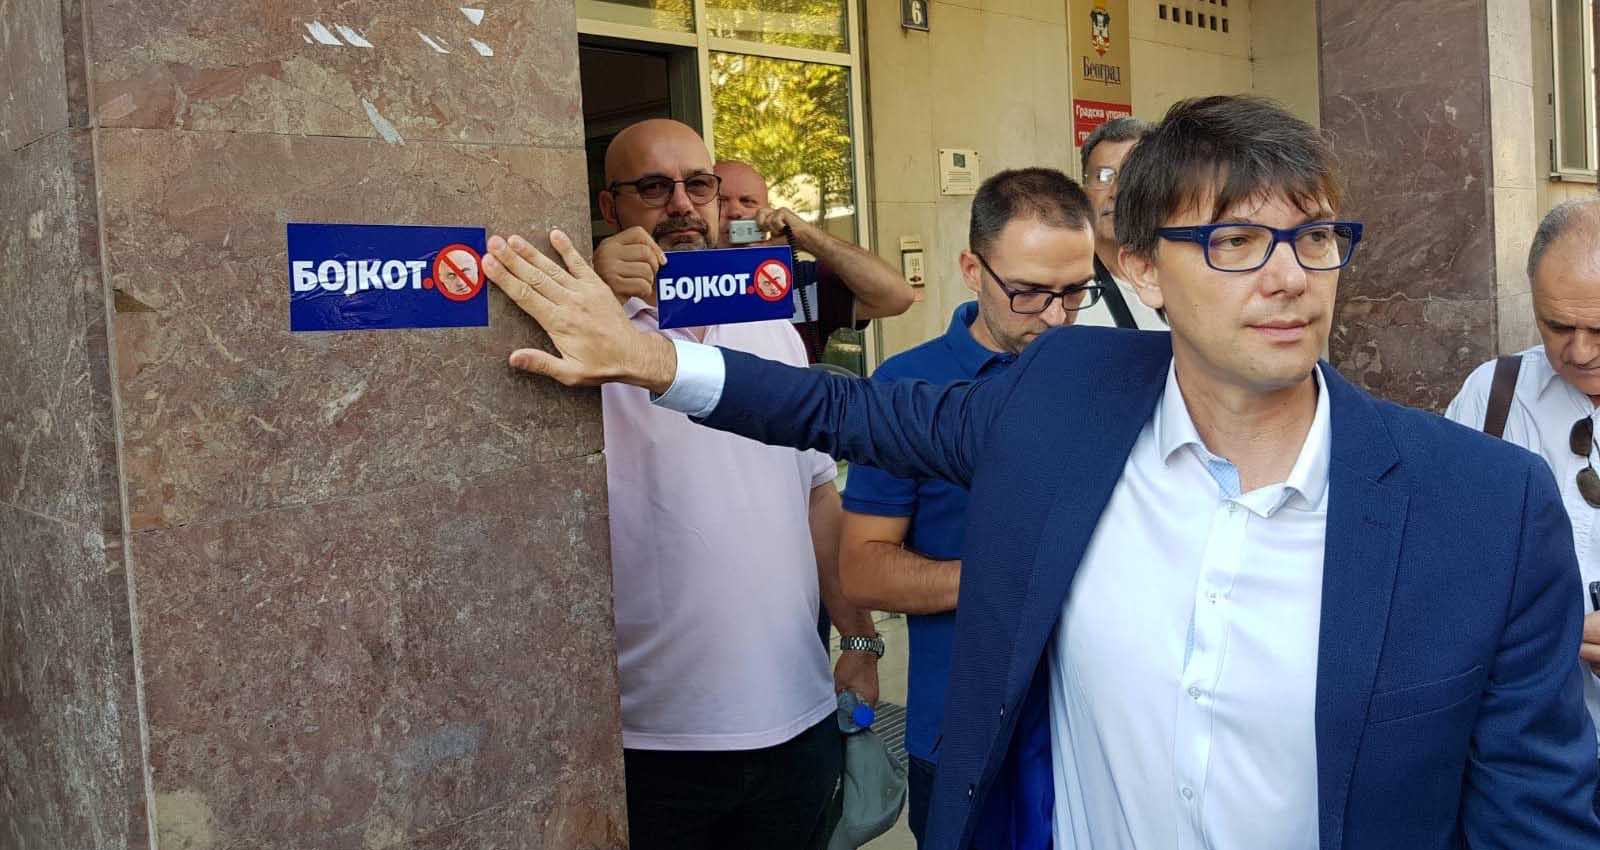 Јовановић за Данас: Народна странка привржена јединству опозиције, о свему разговарати унапред